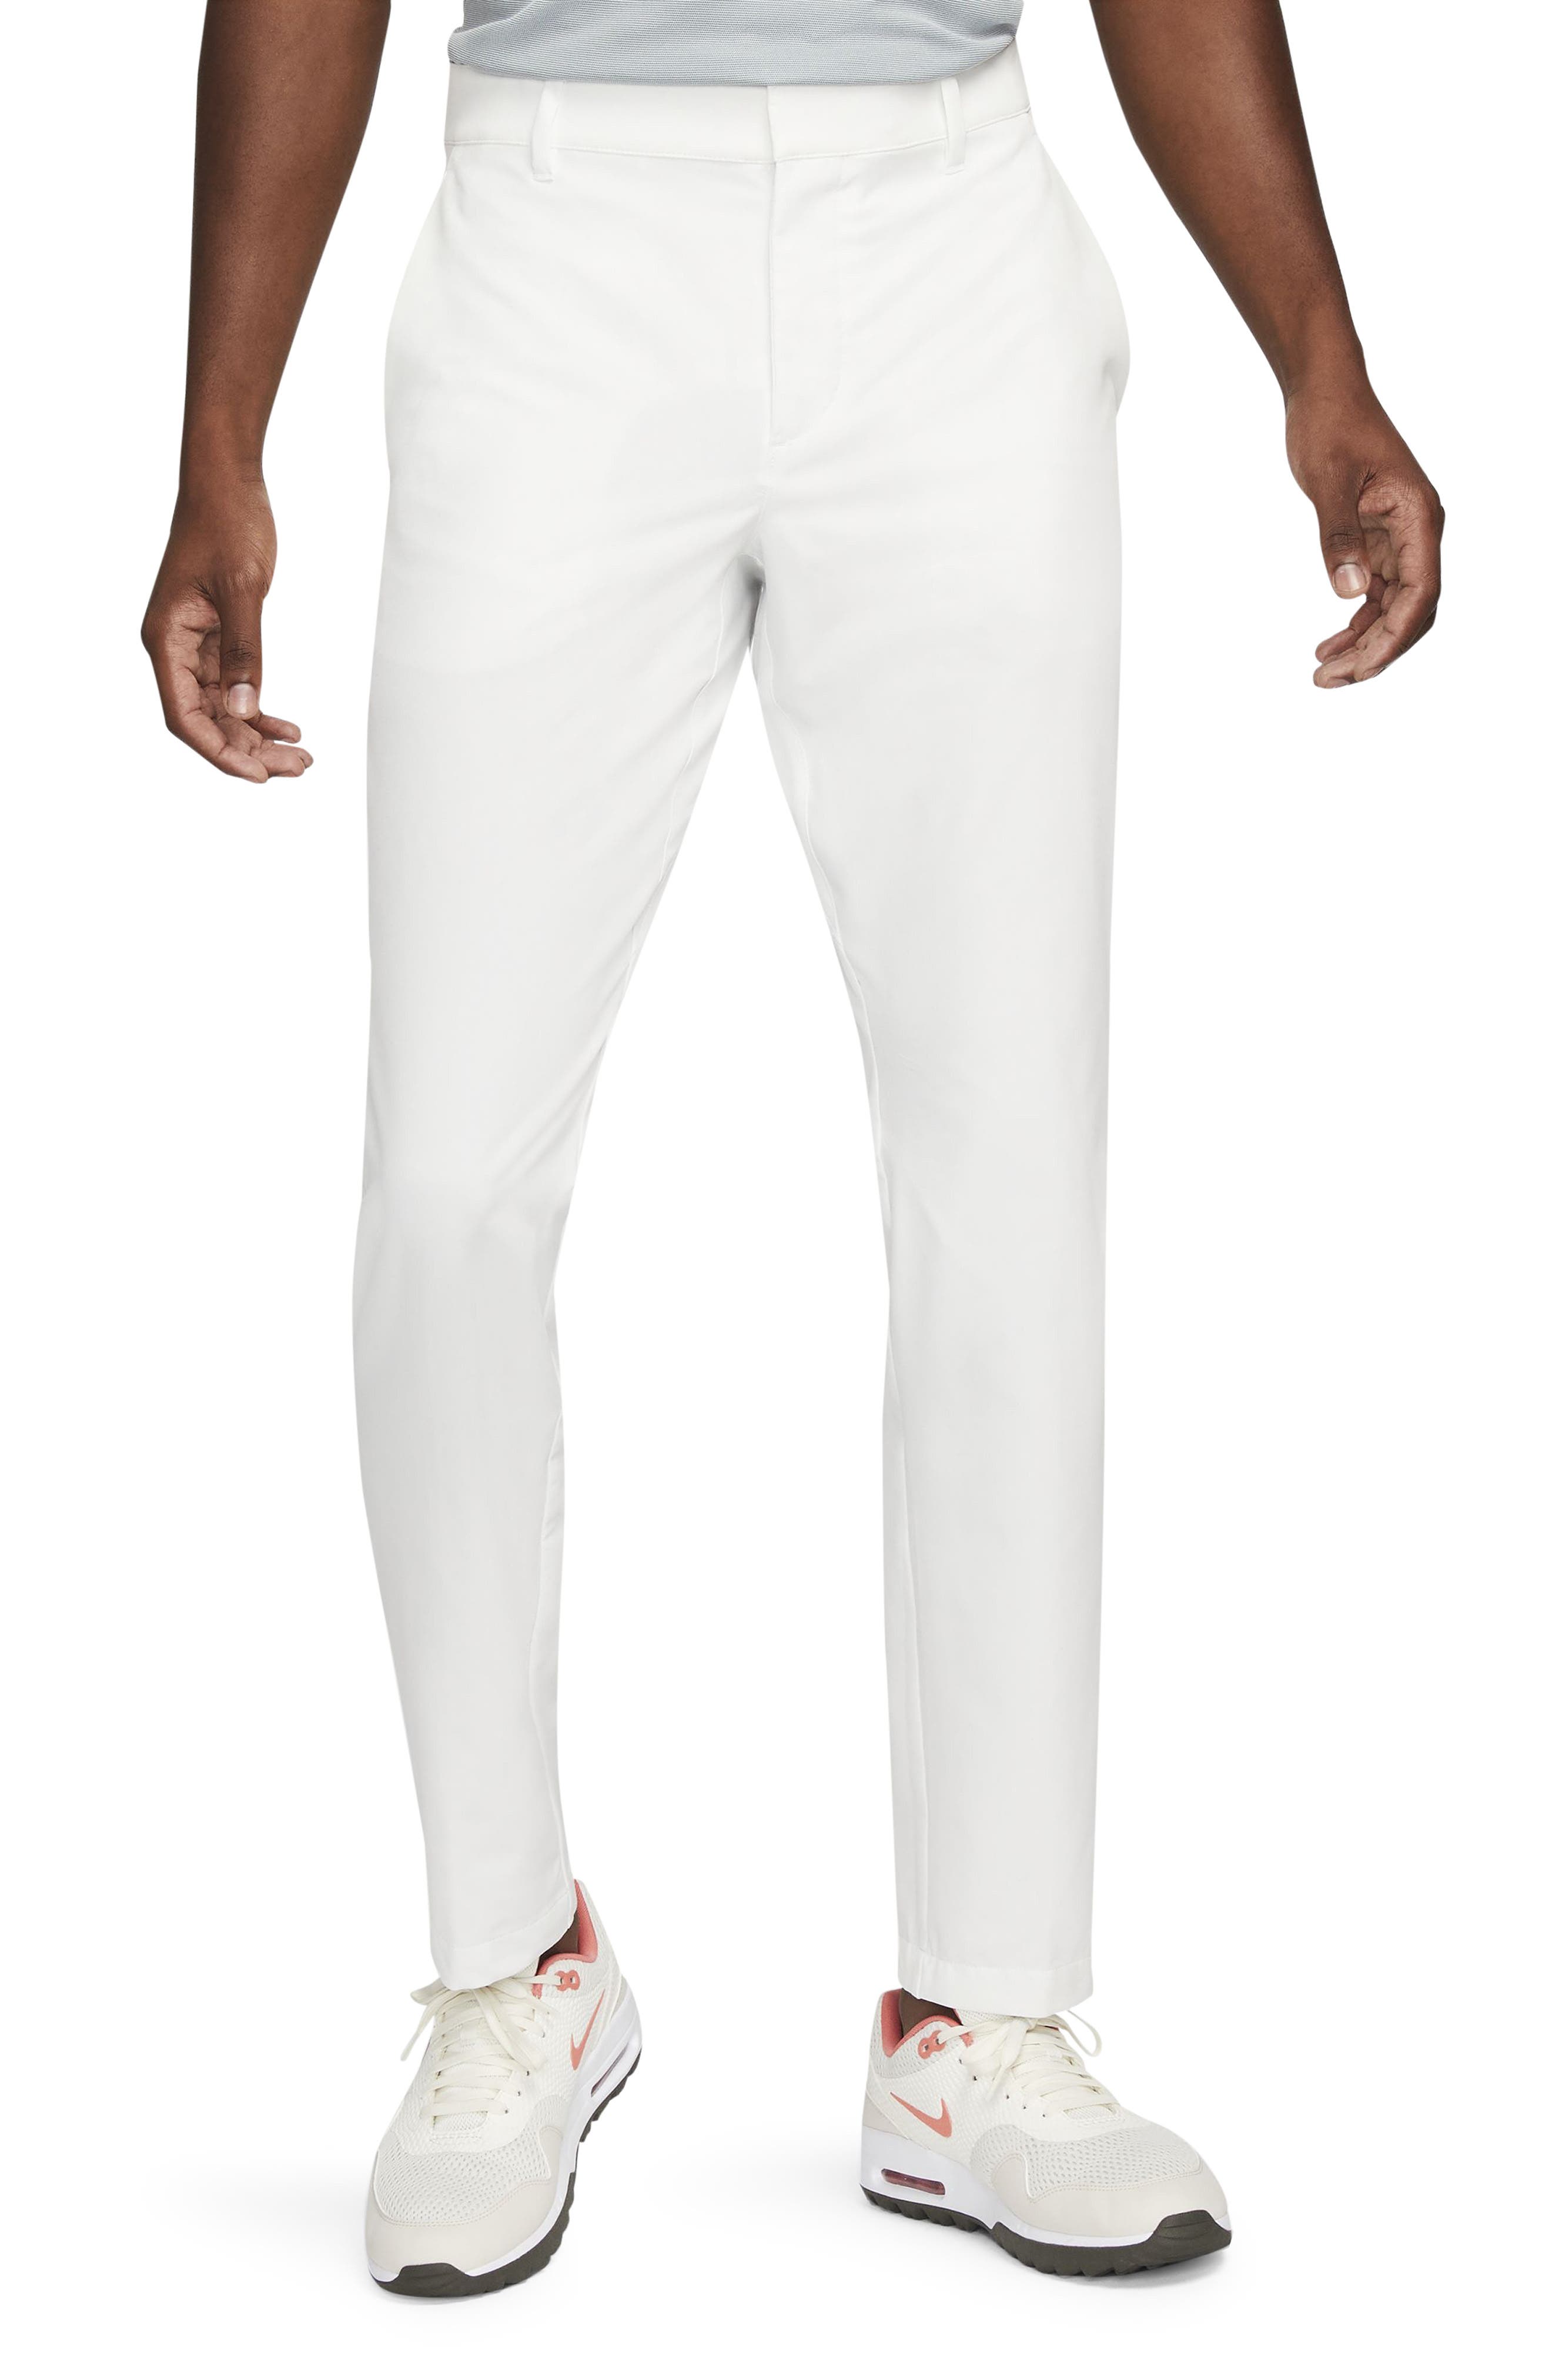 white dress pants mens